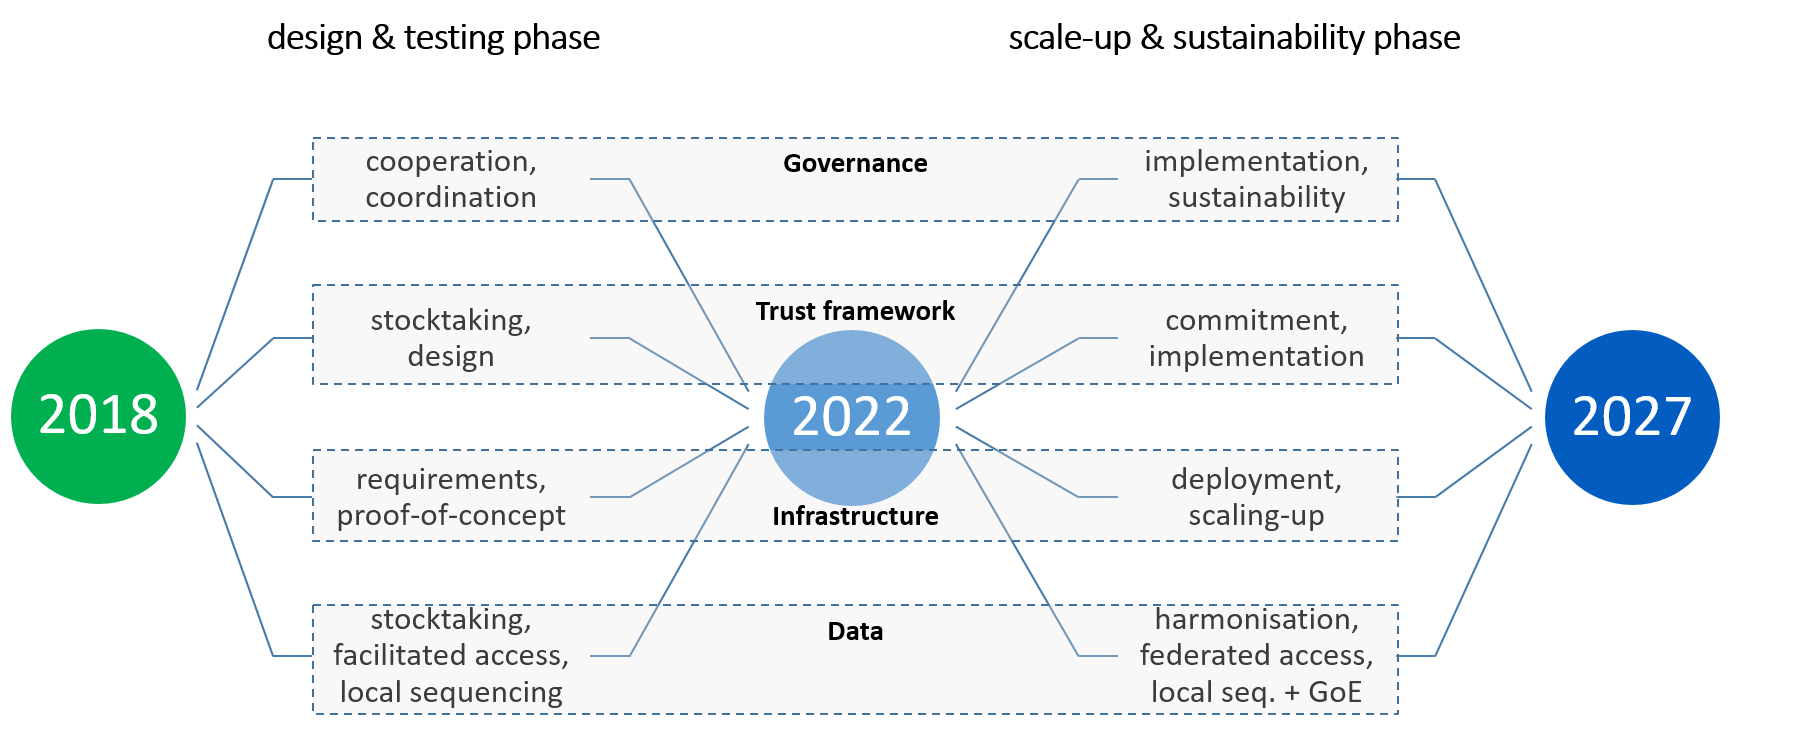 Provedba deklaracije 1+MG i planova za razdoblje od 2018. do 2027. Vremenski okvir podijeljen je u dvije glavne faze: Projektiranje i pojačanje; Faza ispitivanja: Ta faza traje od 2018. do 2022. Scale-Up & Faza održivosti: Ta faza traje od 2022. do 2027. Istaknuta su ključna područja interesa, a ona uključuju: Upravljanje: Tijekom faze osmišljavanja i testiranja naglasak je na suradnji i koordinaciji. U fazi rasta i održivosti naglasak se preusmjerava na provedbu i održivost. Okvir povjerenja: U početku su postojali pregled stanja i izrada okvira povjerenja. Nakon toga slijedi faza preuzimanja obveza i provedbe. Infrastruktura: U ranim fazama rješavaju se zahtjevi i dokaz koncepta. Kako projekt napreduje, uvođenje i širenje postaju ključni. Podaci: U početku su postojali pregled stanja, olakšan pristup i lokalni redoslijed. Kasnije dolazi do usklađivanja, udruženog pristupa i lokalnog sekvenciranja s globalnom perspektivom. Na kronologiji su istaknute godine 2018., 2022. i 2027.